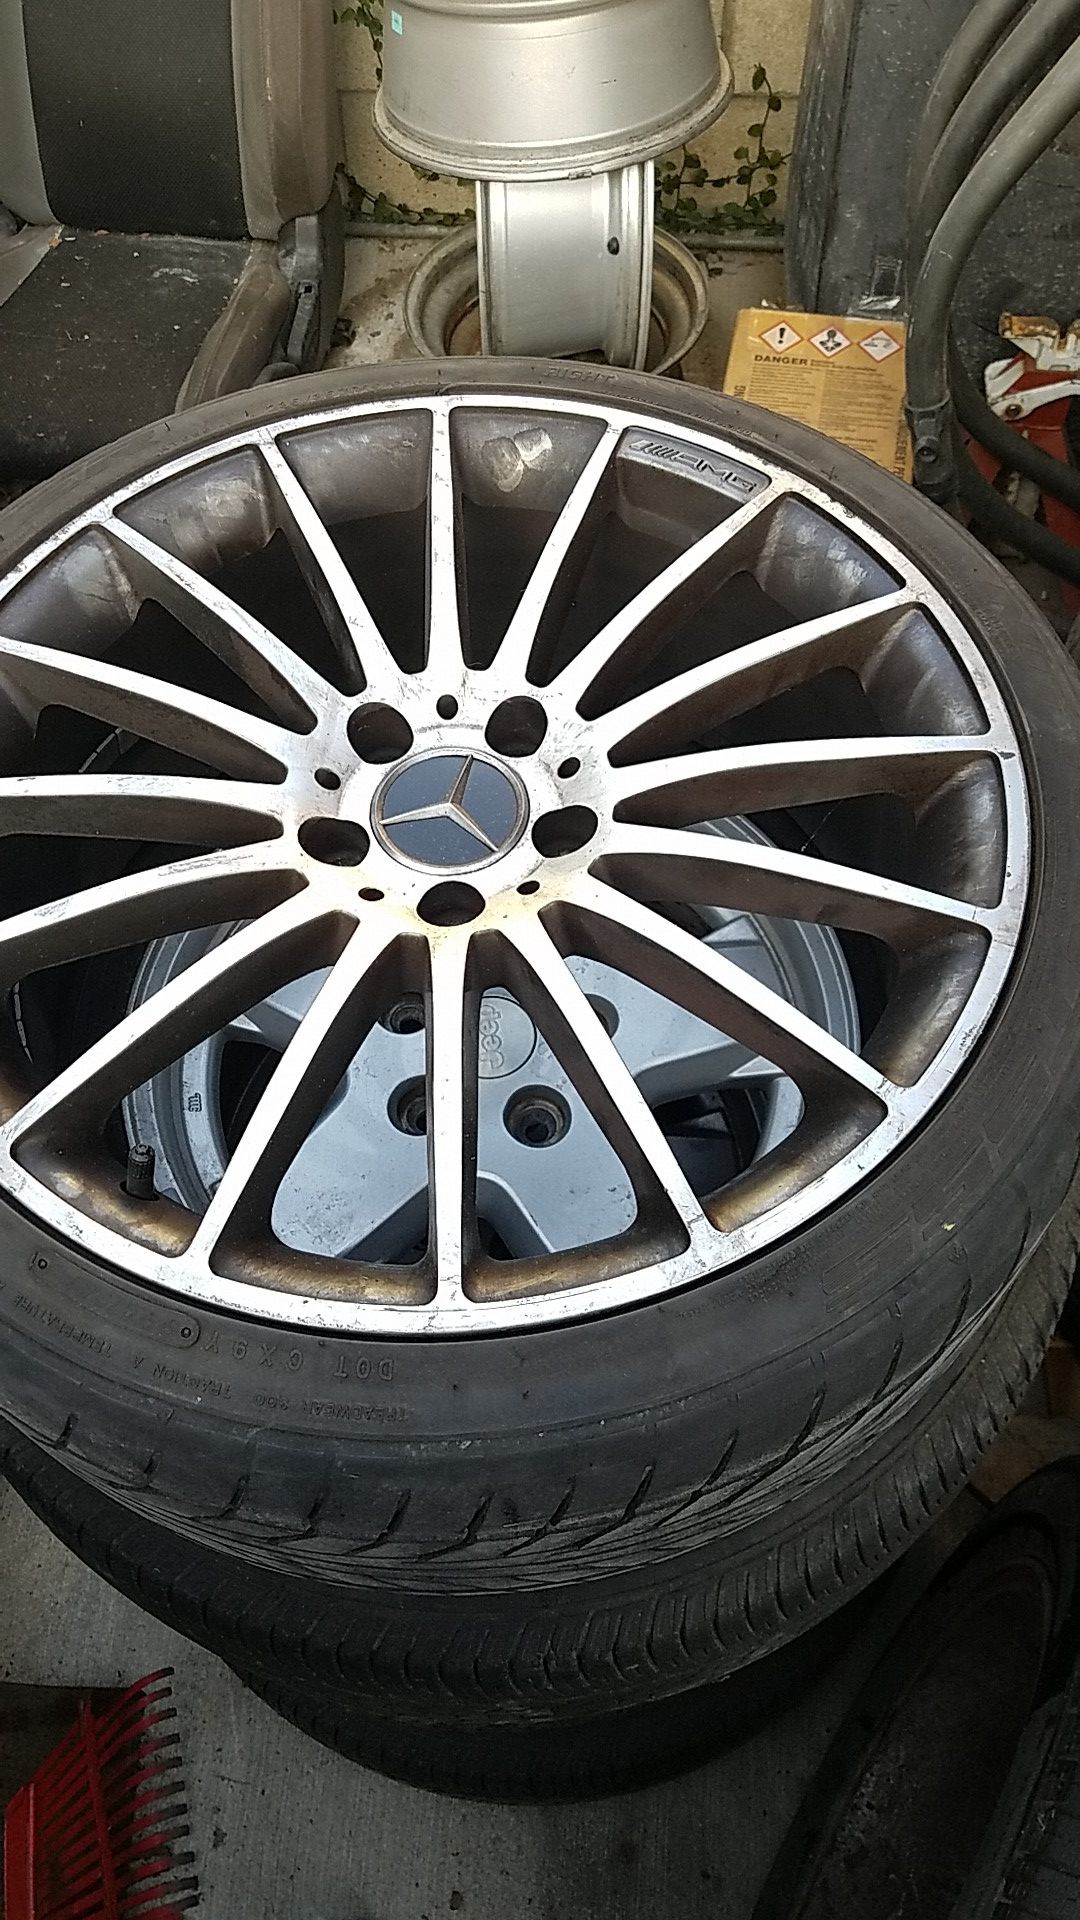 Amg mercedes benz wheels rims 19 inch 5x112